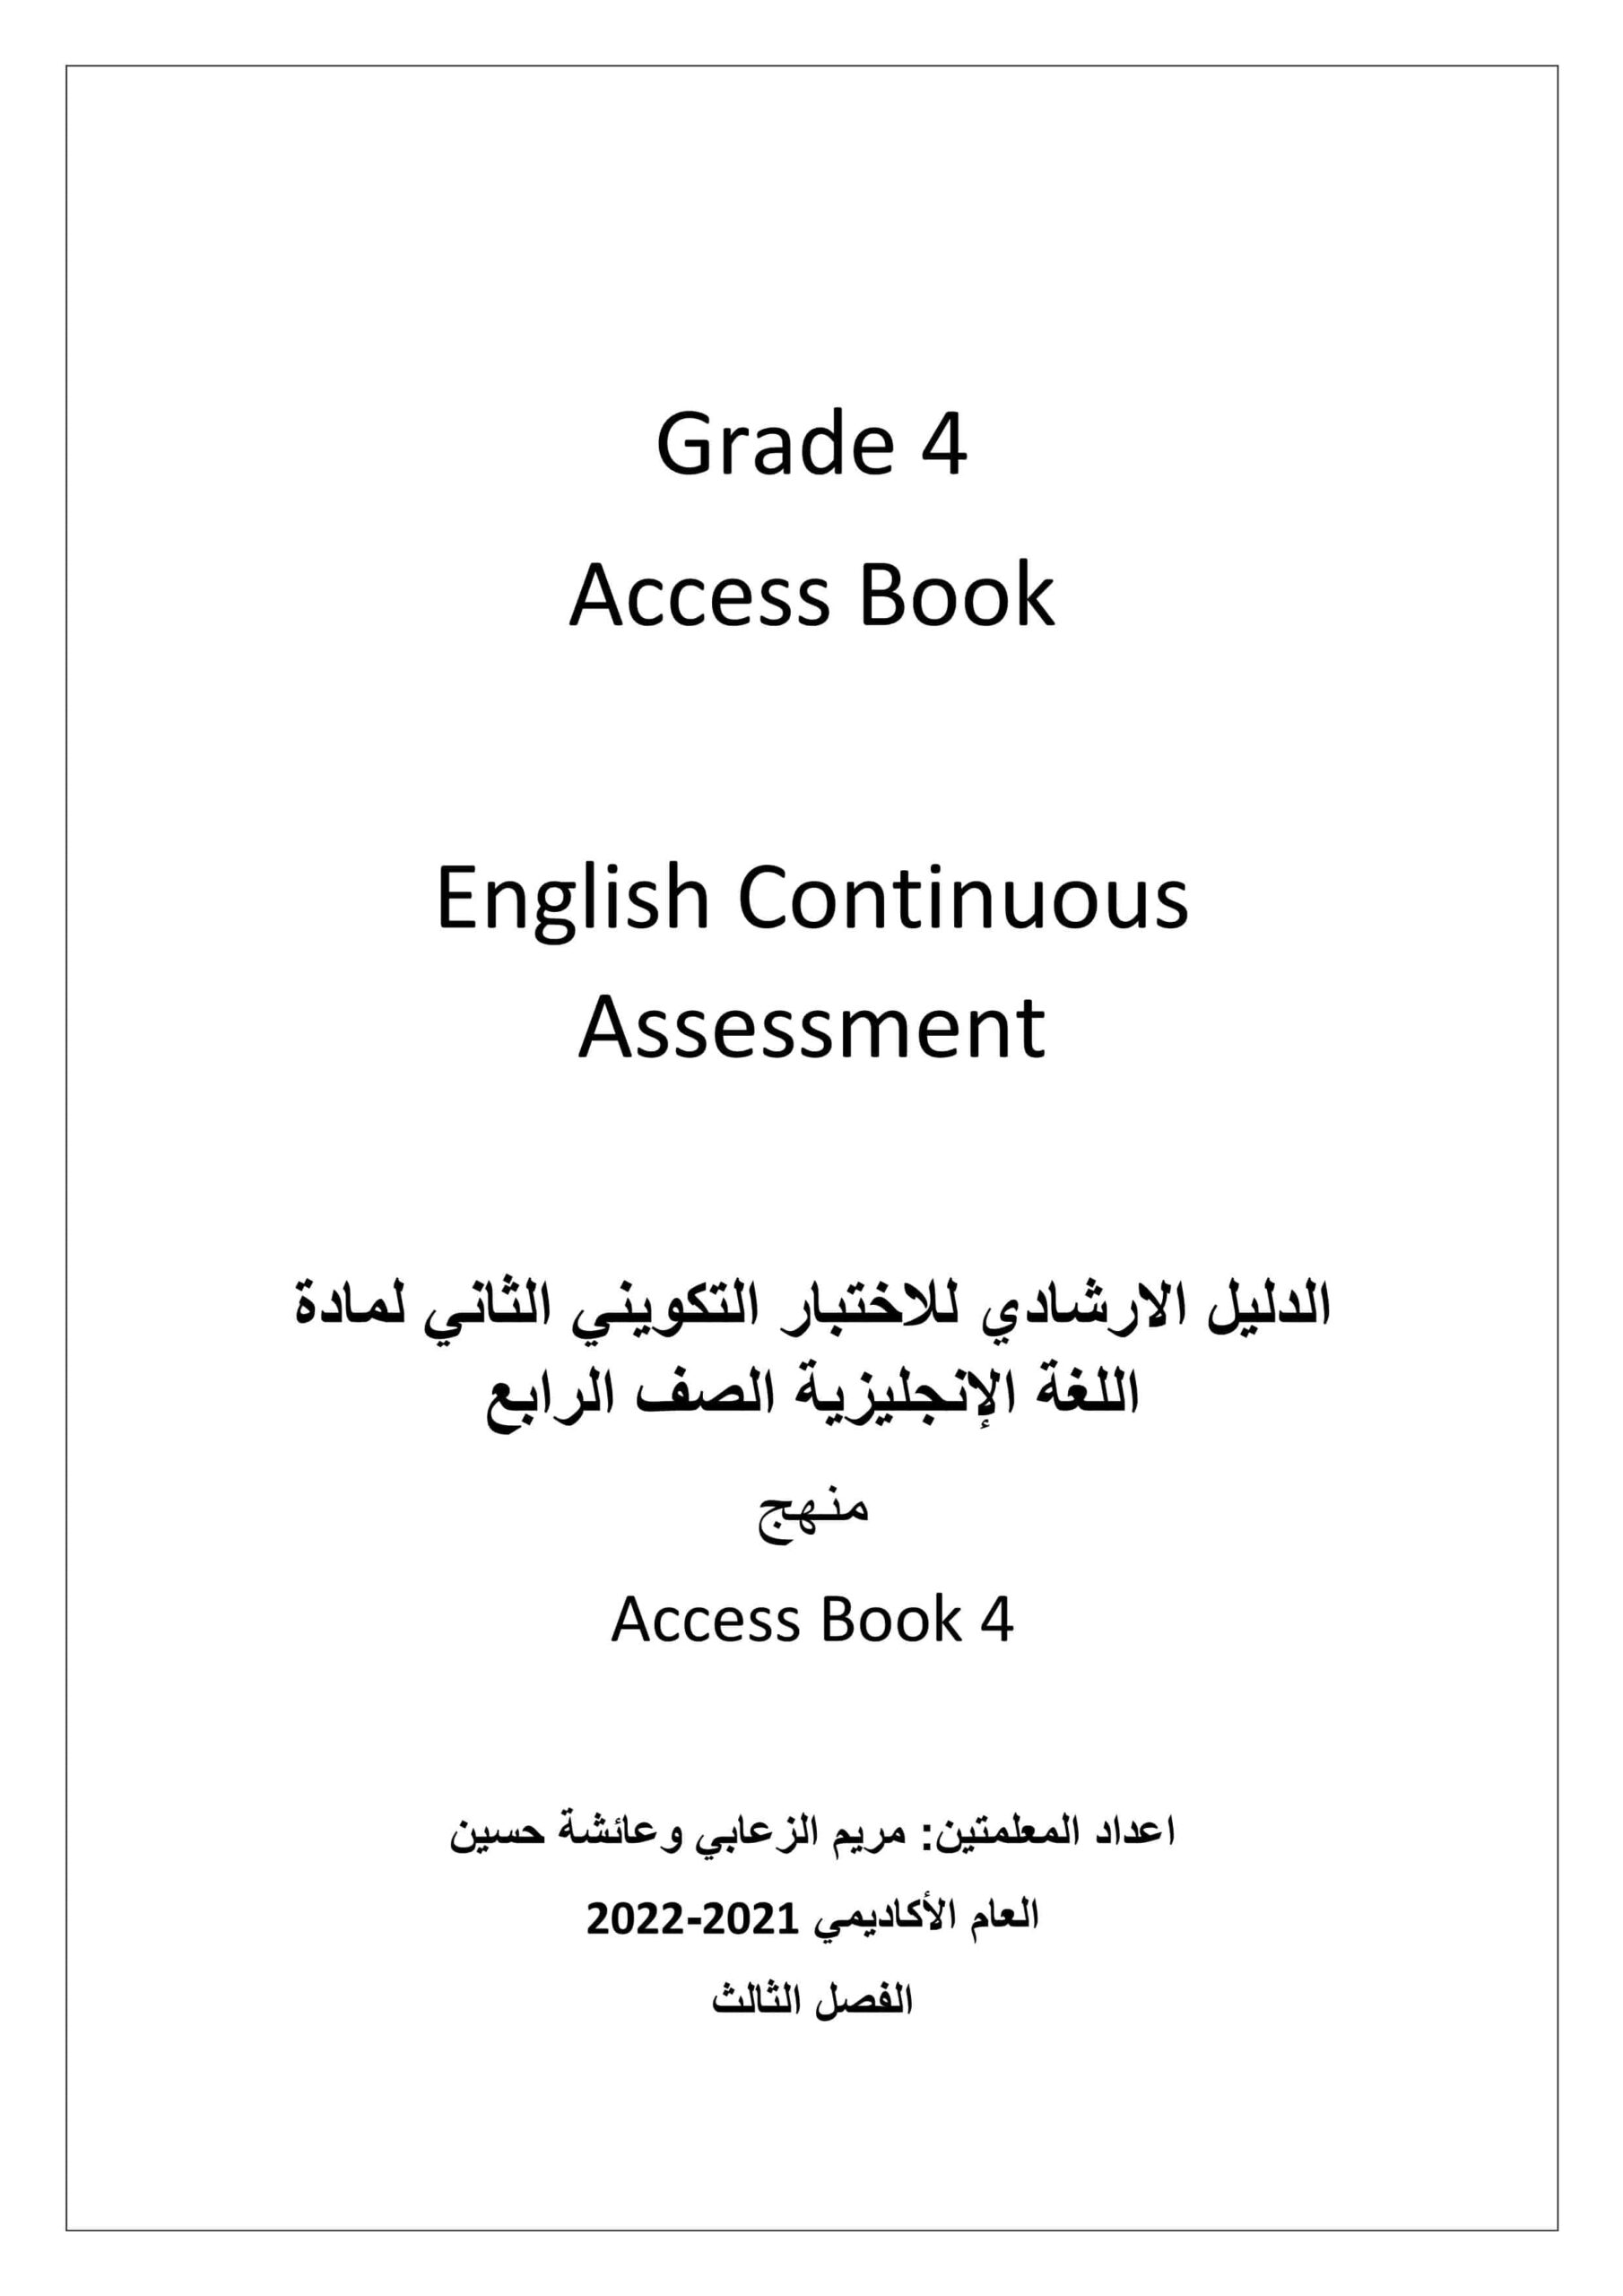 الدليل الإرشادي للاختبار التكويني الثاني اللغة الإنجليزية الصف الرابع